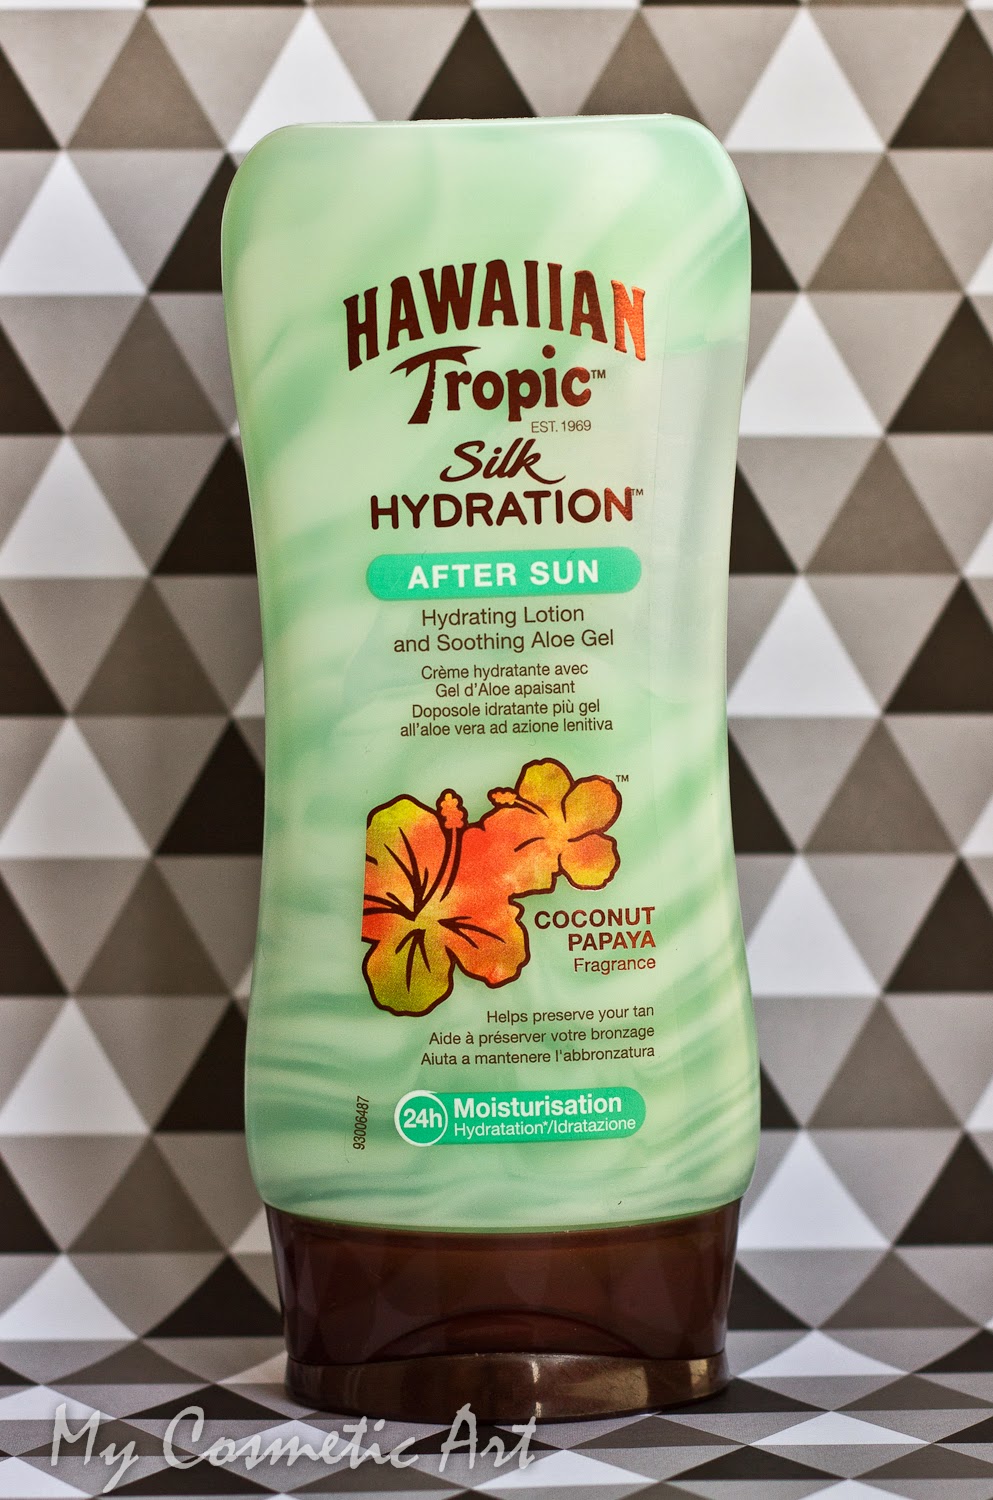 After Sun Silk Hydratation de Hawaiian Tropic